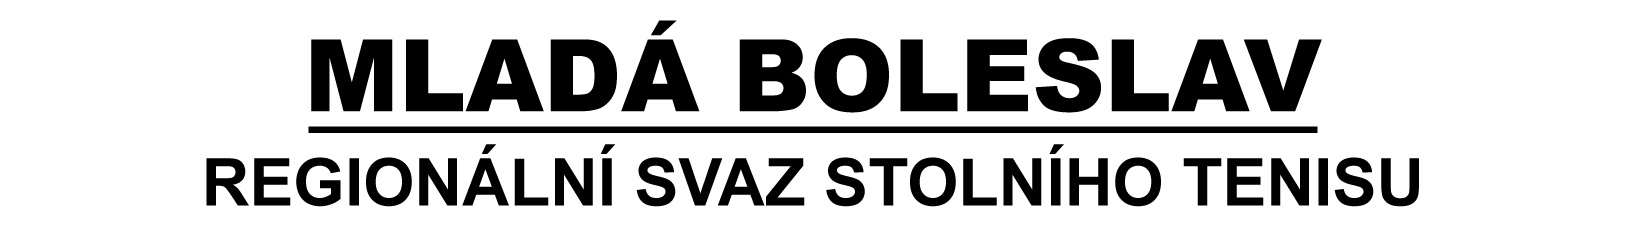 RSST Mladá Boleslav